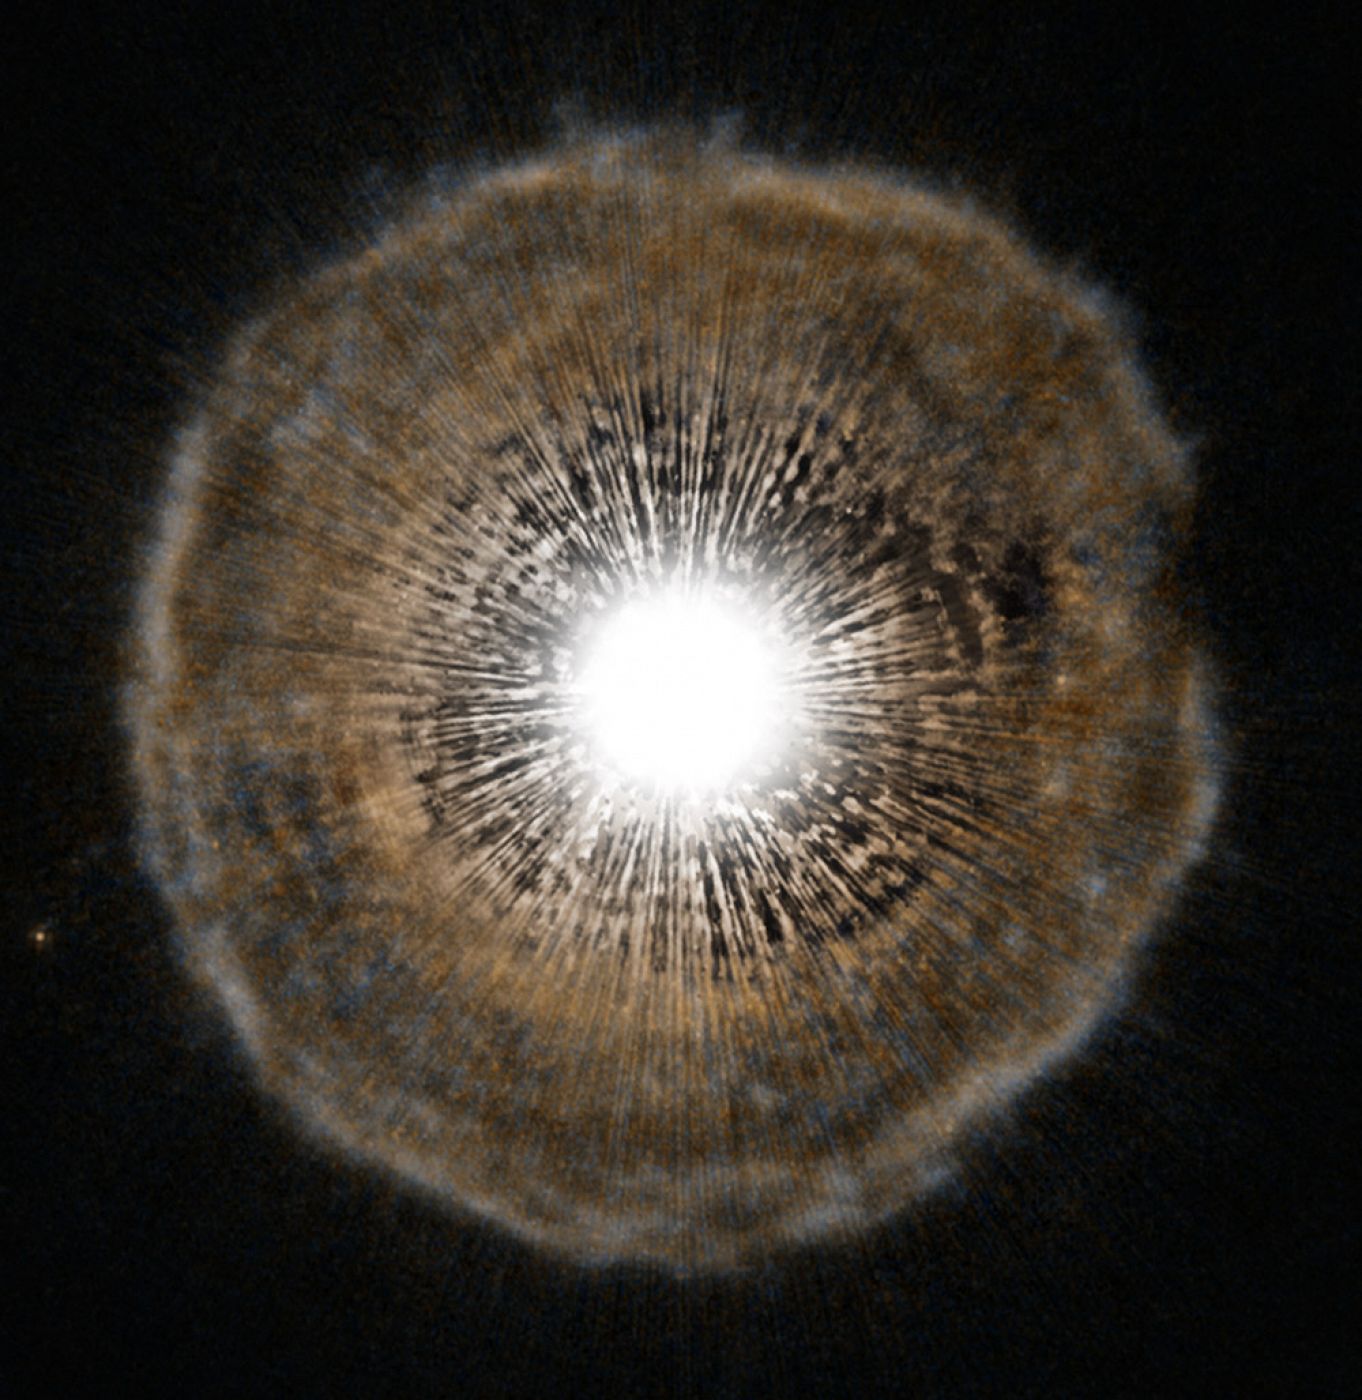 Imagen del telescopio espacial Hubble que muestra una estrella de carbono brillante cenrca del final de su vida rodeada de una capa de gas y polvo.